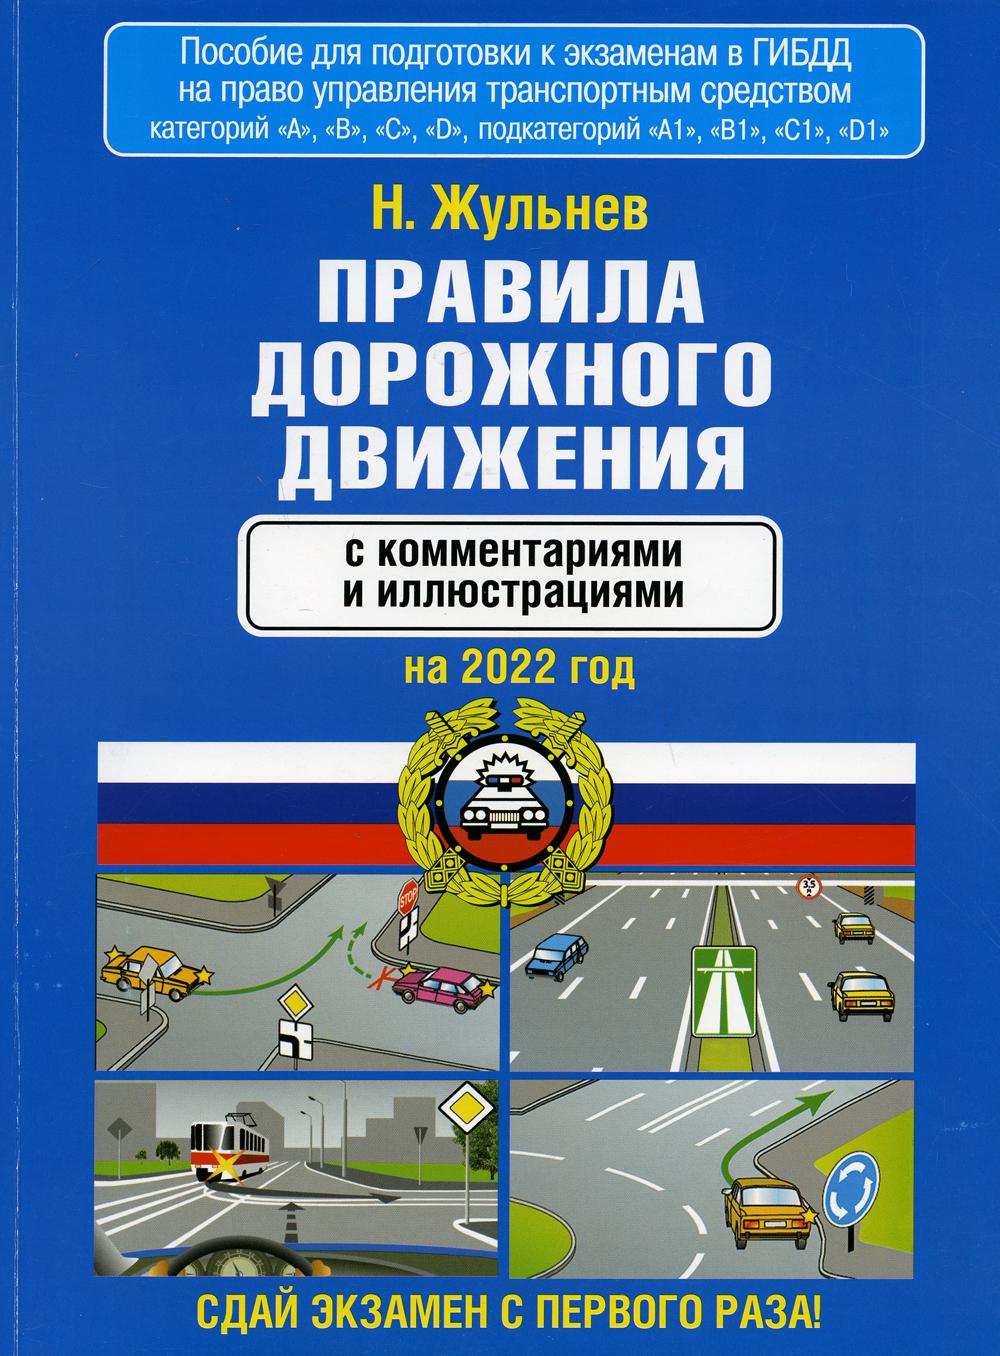 Правила дорожного движения с комментариями и иллюстрациями на 2022 г